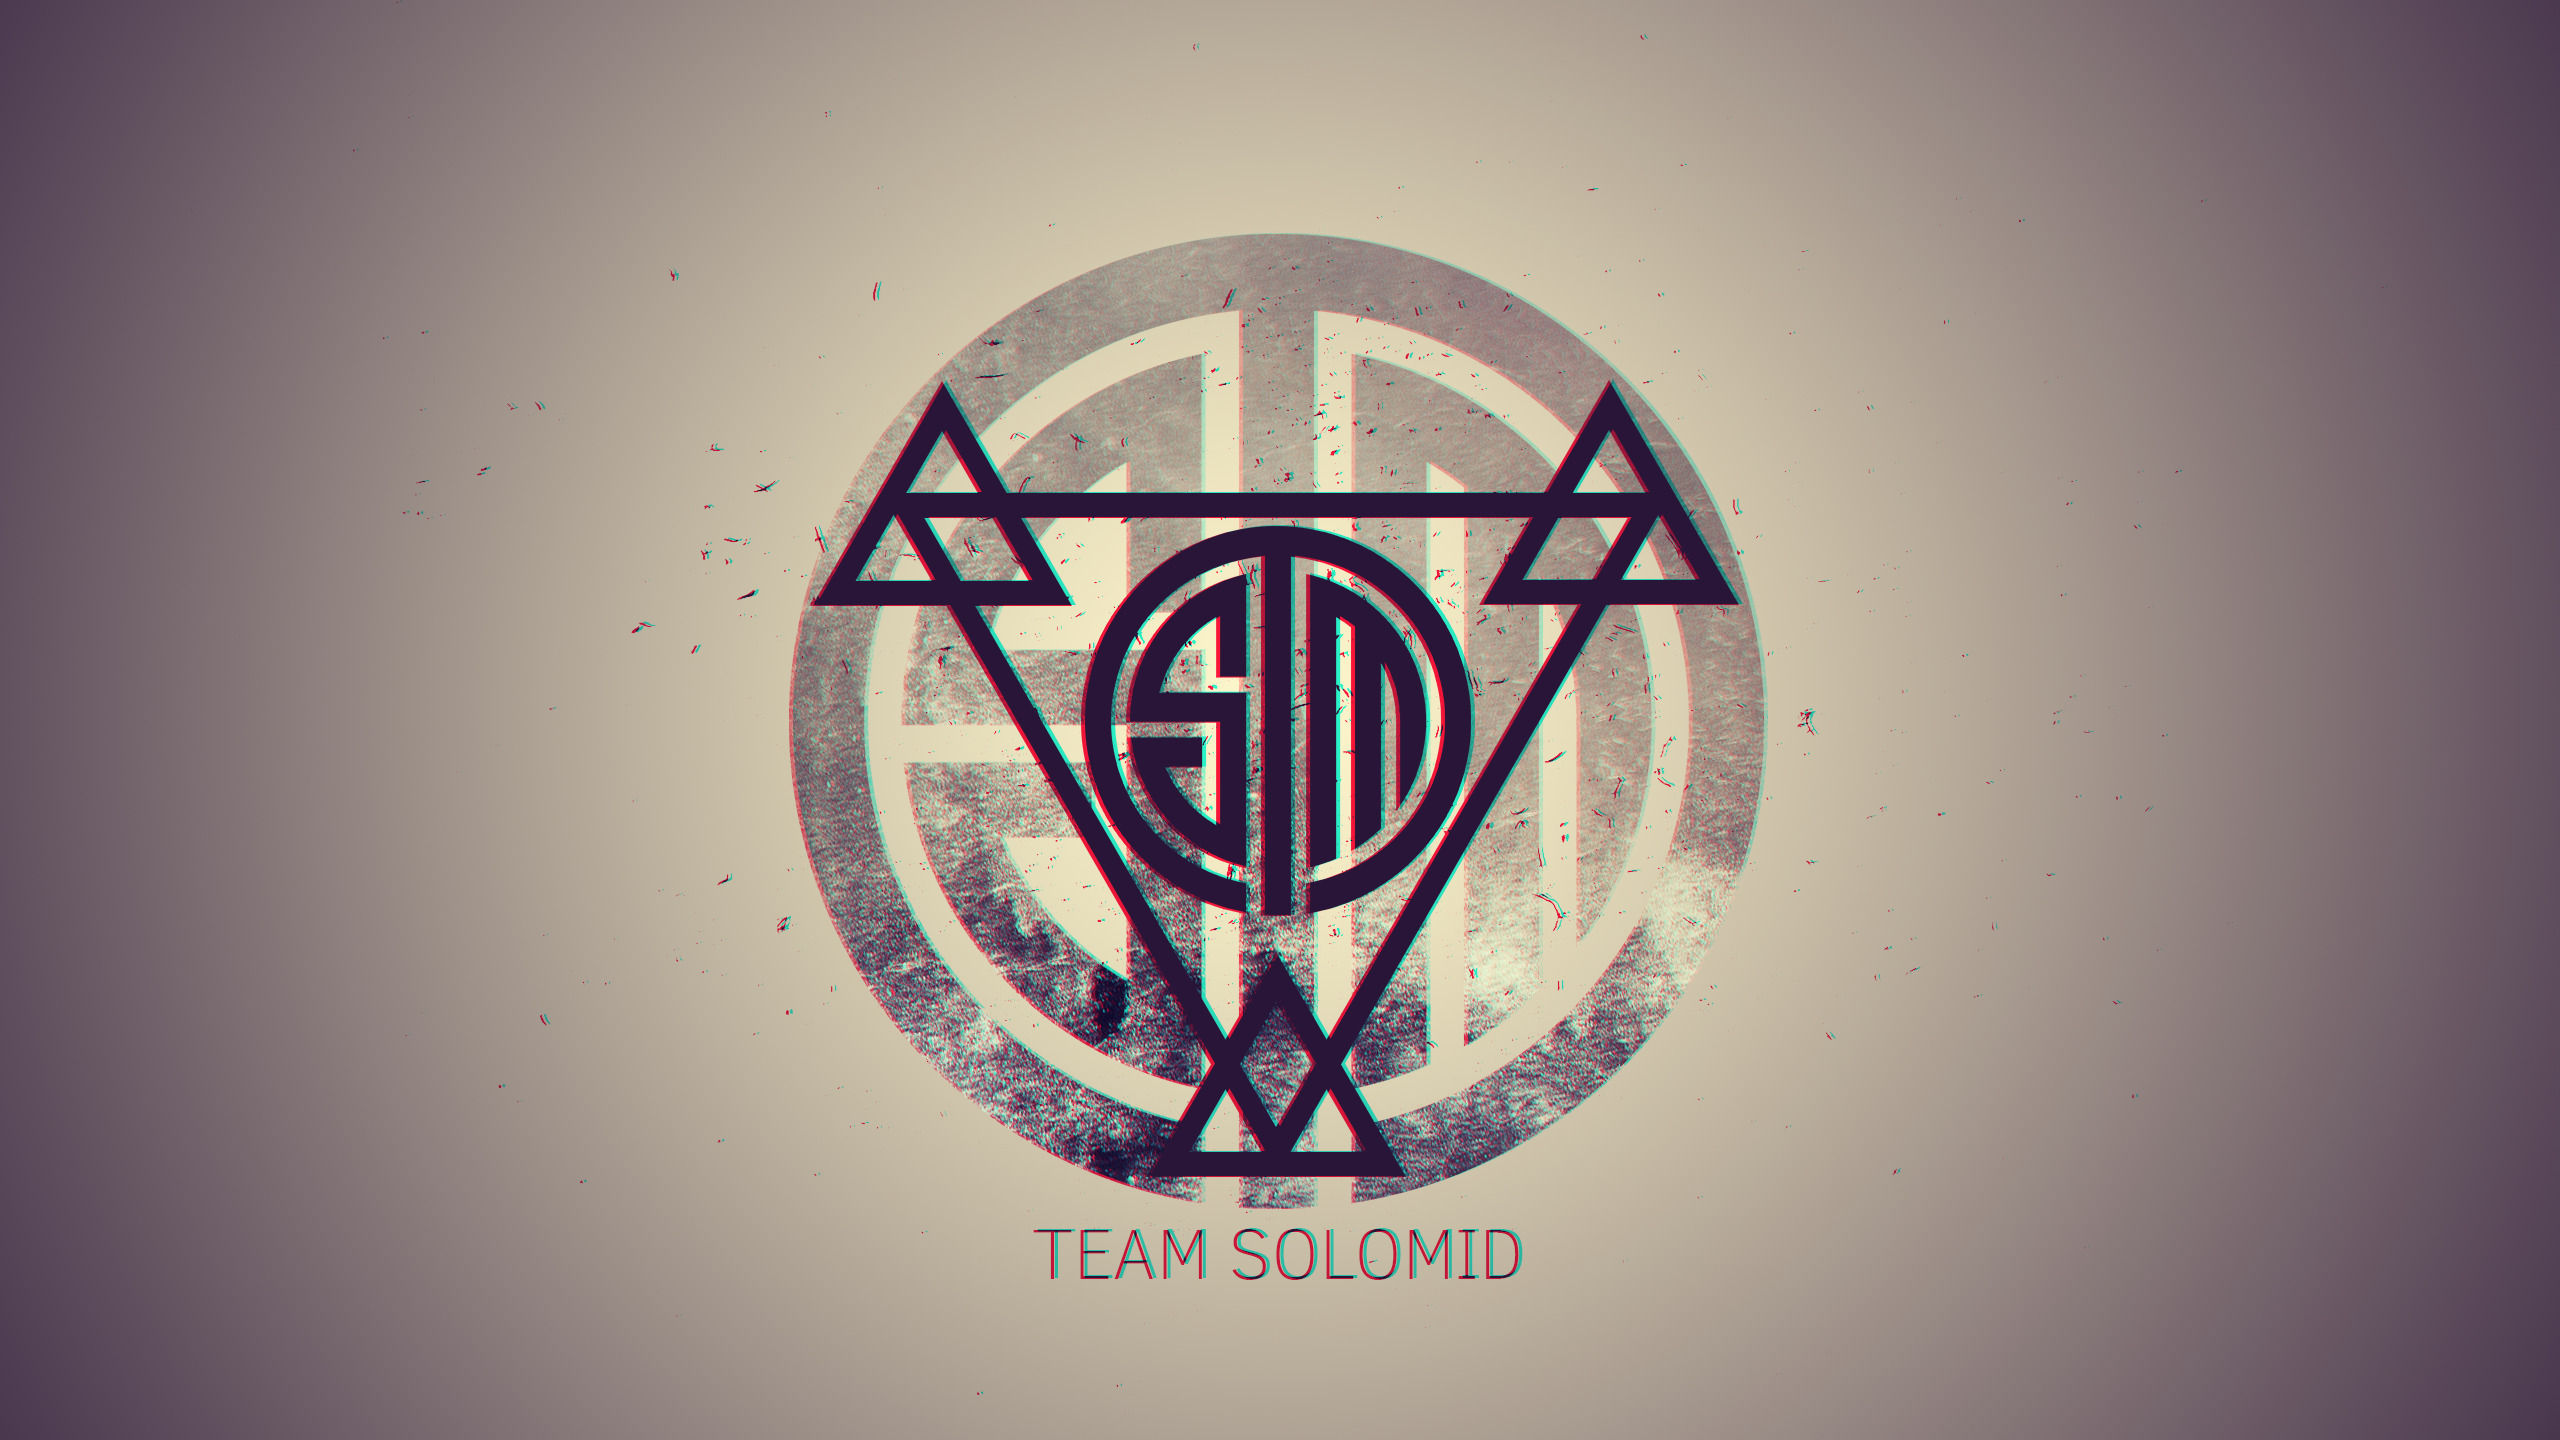 Team Solomid, League Of Legends, Esports Wallpaper